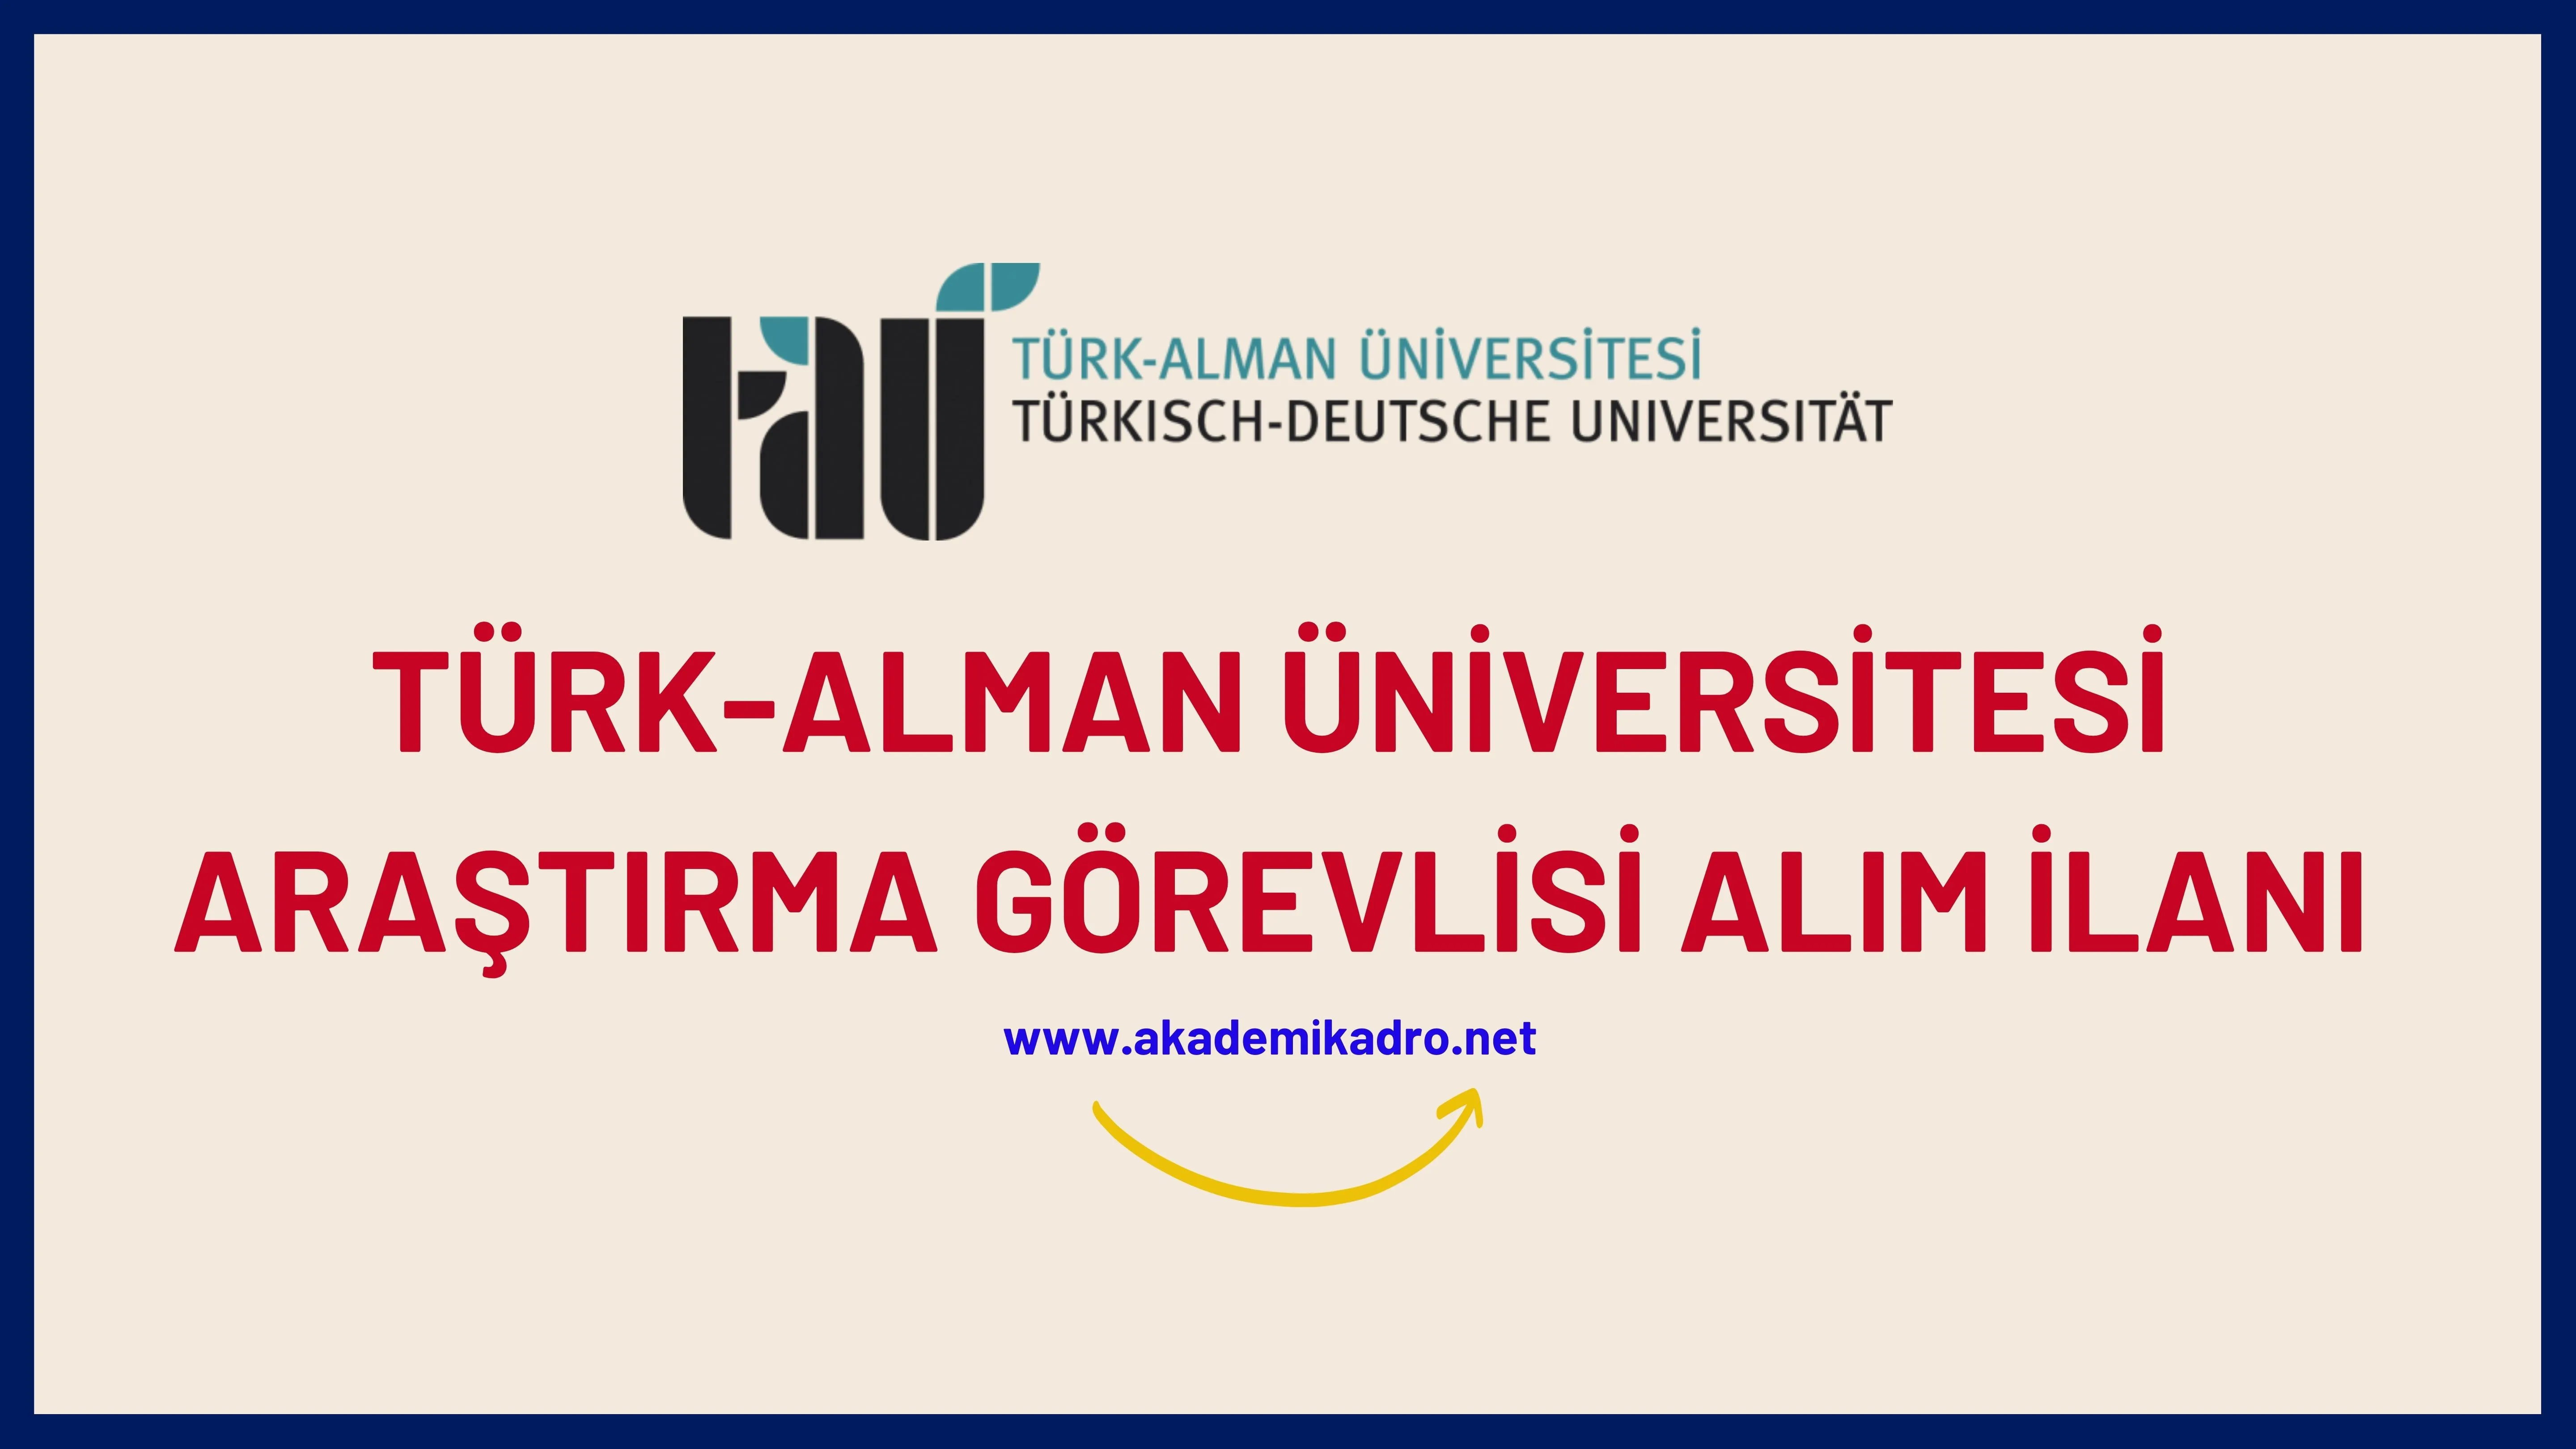 Türk-Alman Üniversitesi birçok alandan 14 Araştırma görevlisi alacak.